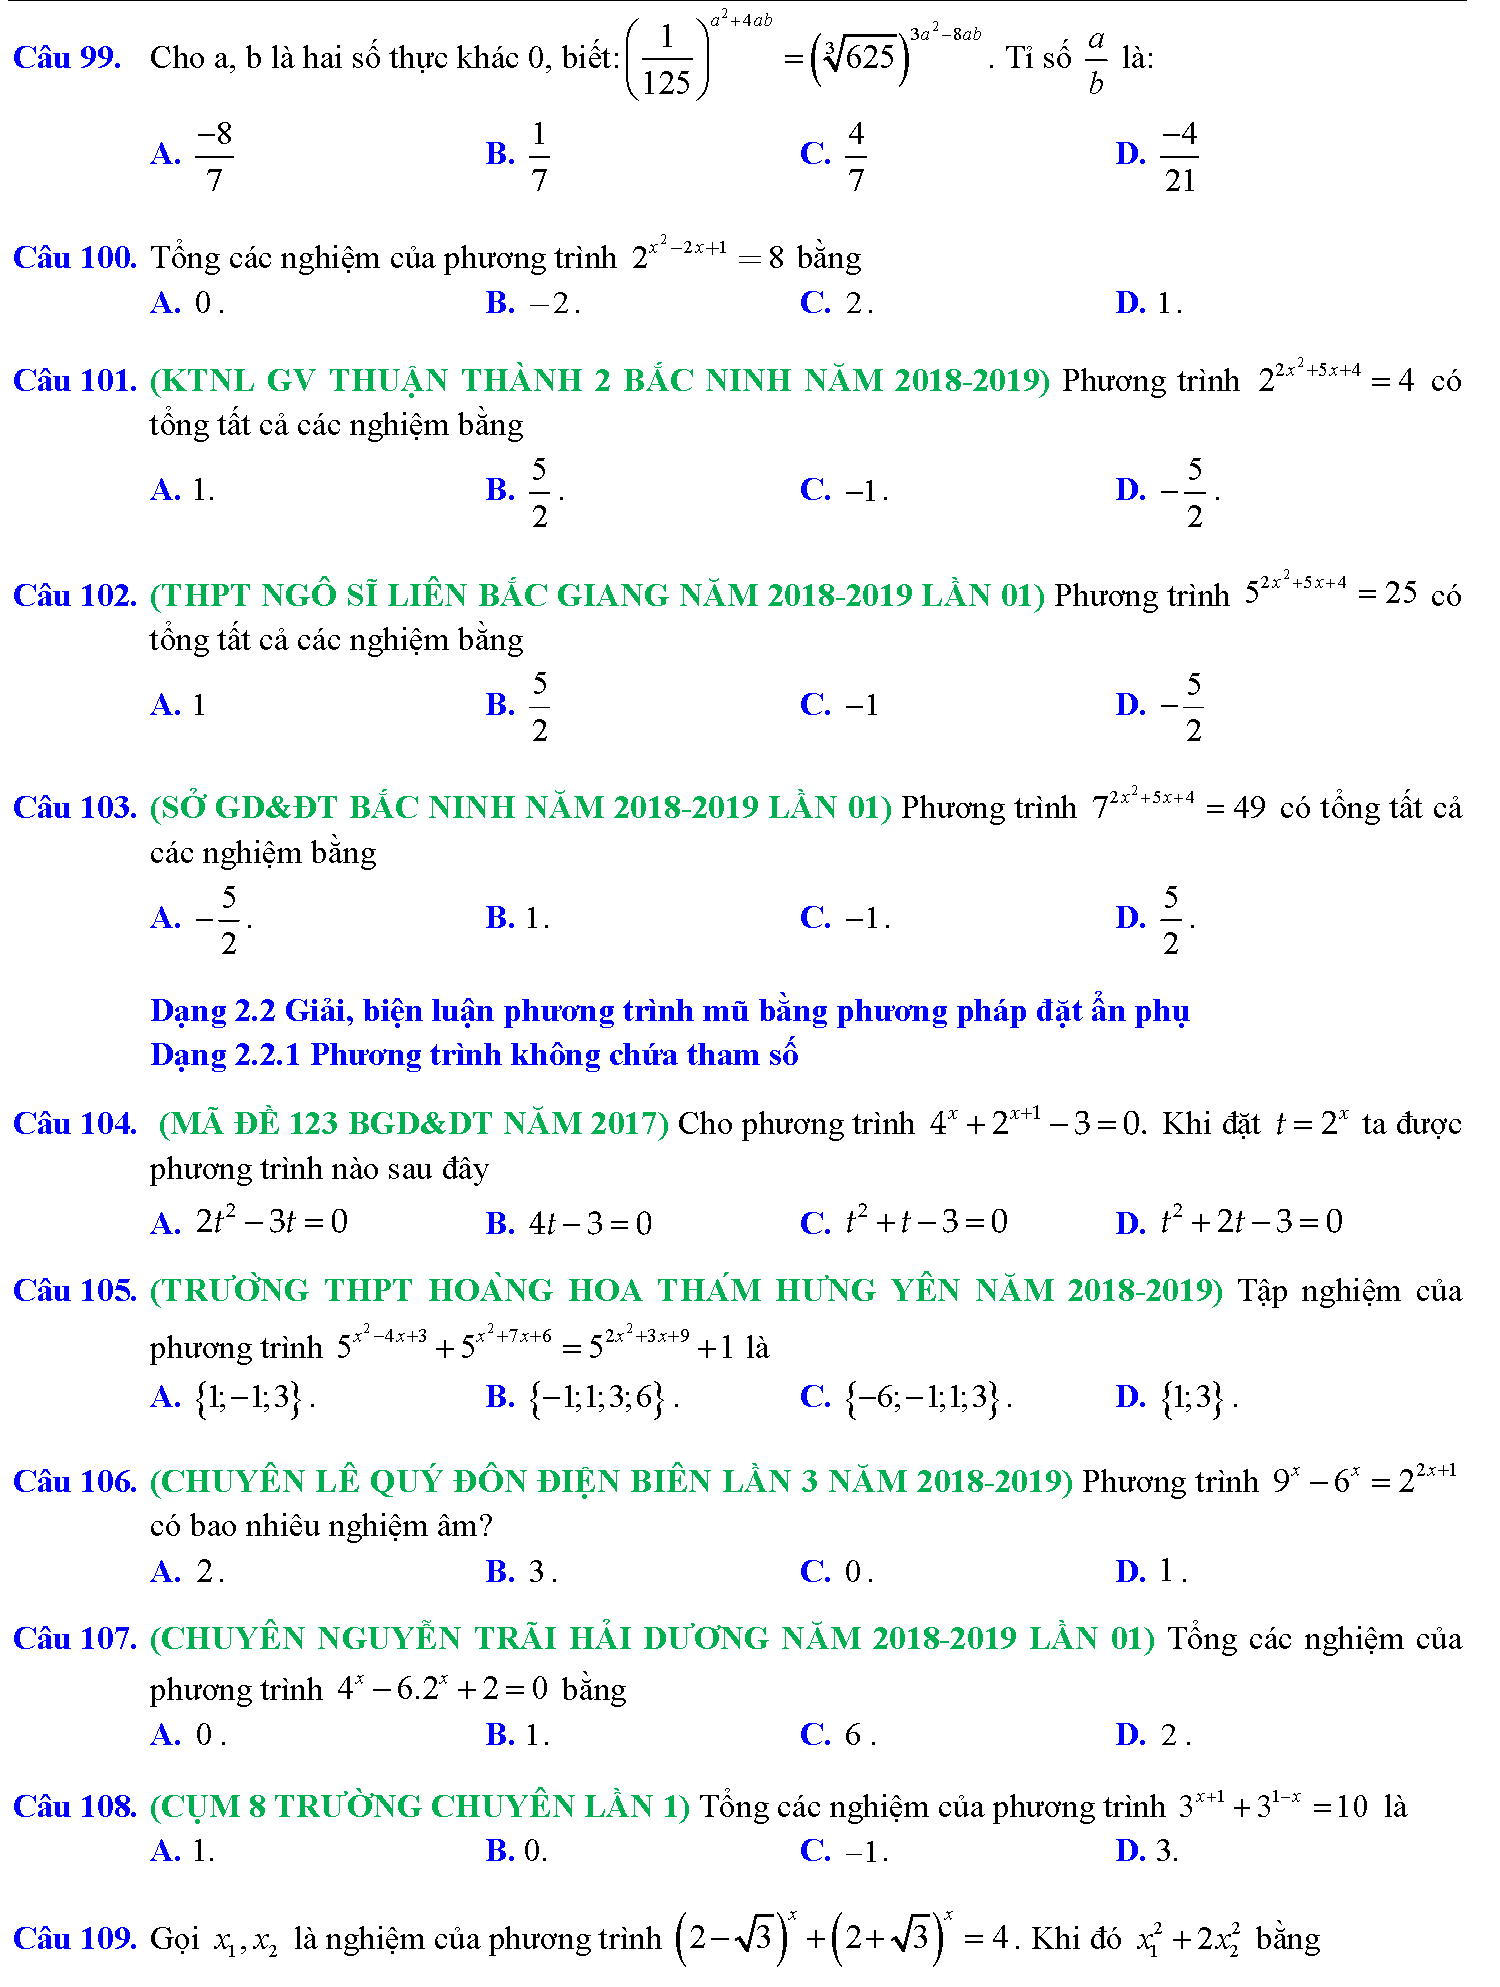 Phương trình mũ, phương trình logarit trong kỳ thi THPTQG 13